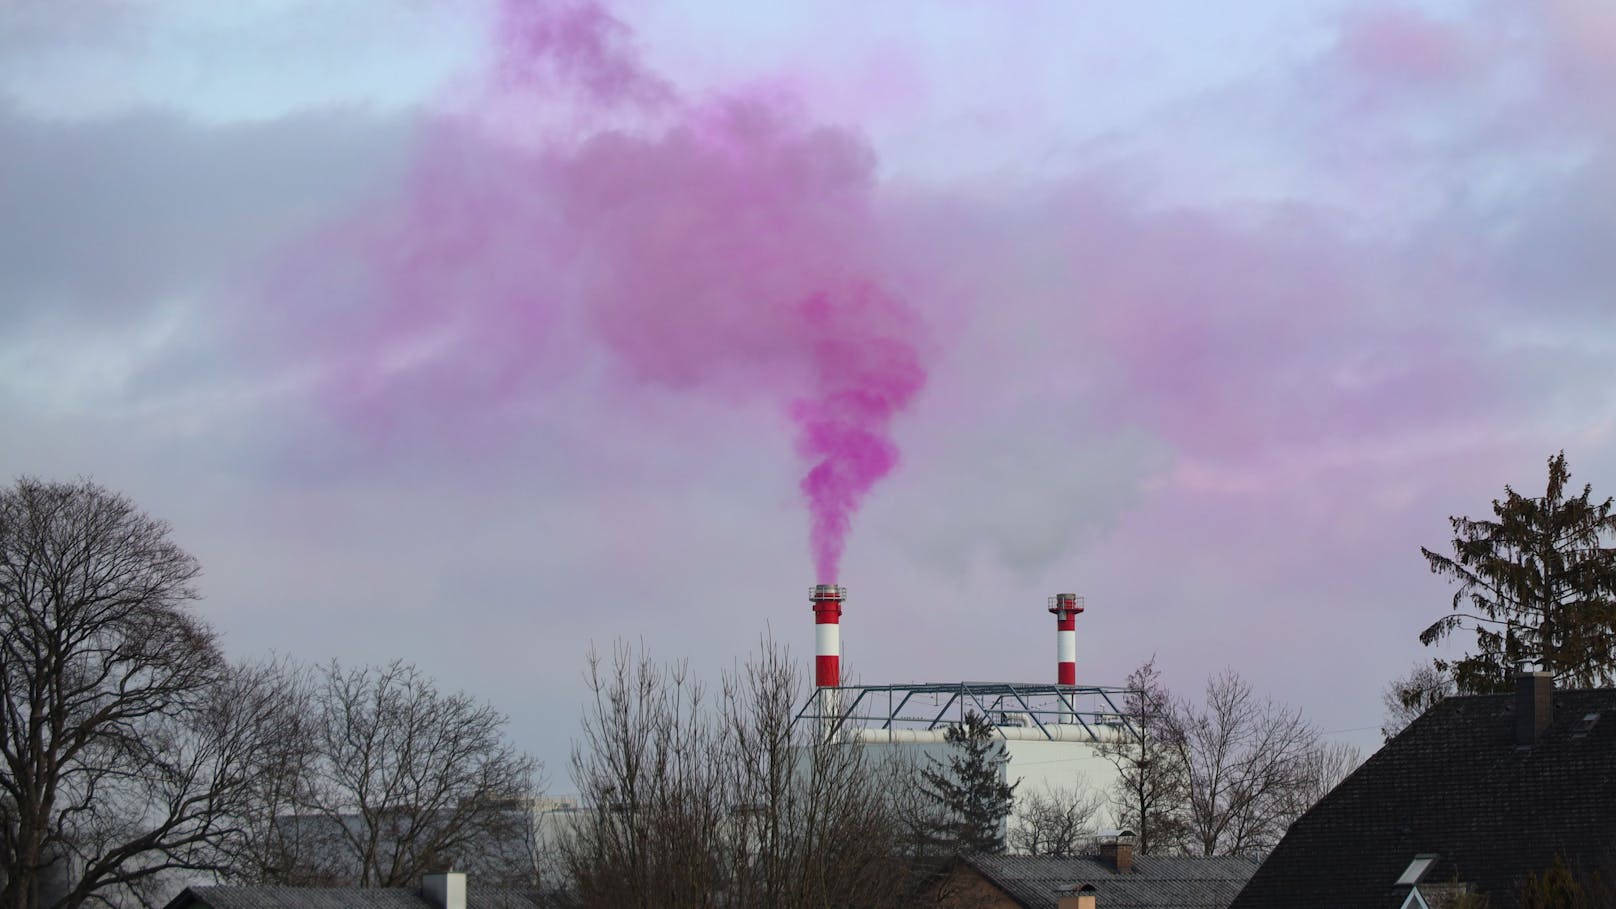 Pinkfarbener Rauch verunsicherte die Bürger in Wels.